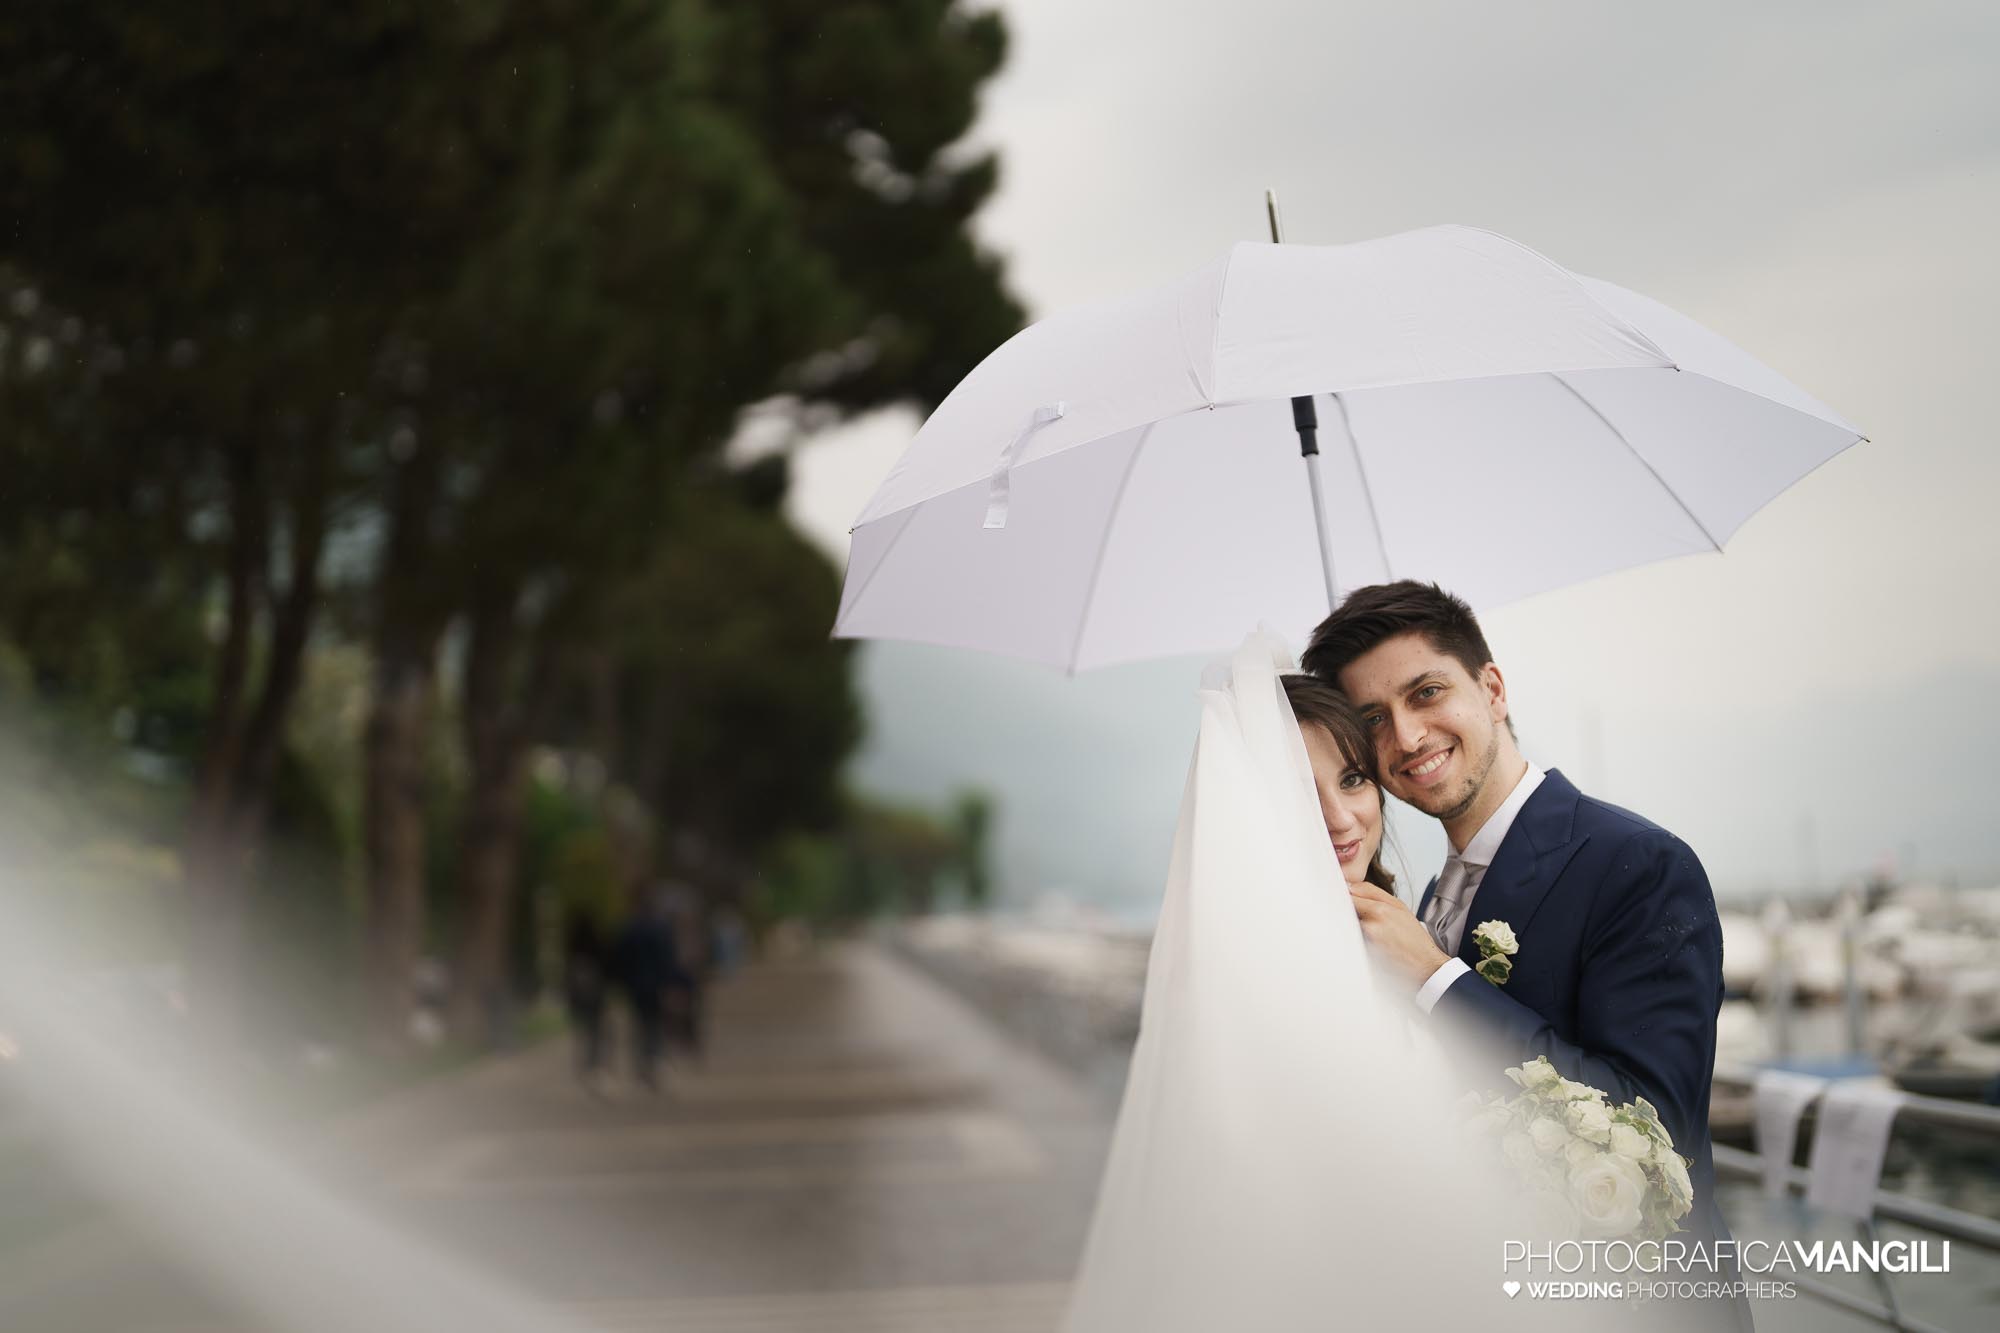 045 servizio fotografico wedding reportage ritratto sposi lungolago Sarnico lago Iseo Bergamo ombrello chiara oliviero